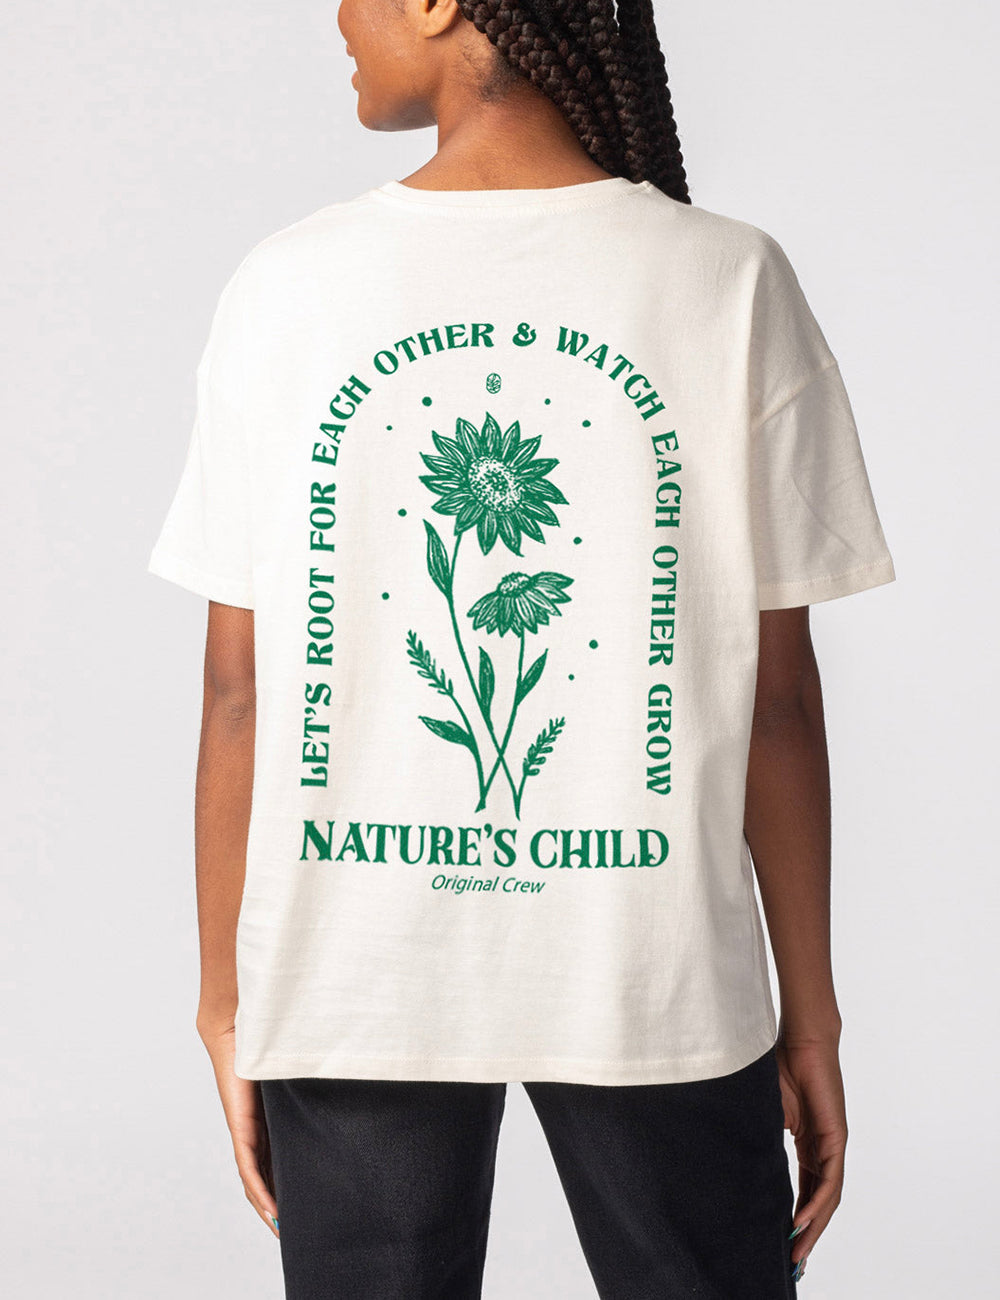 Naturens barn överdimensionerad t-shirt